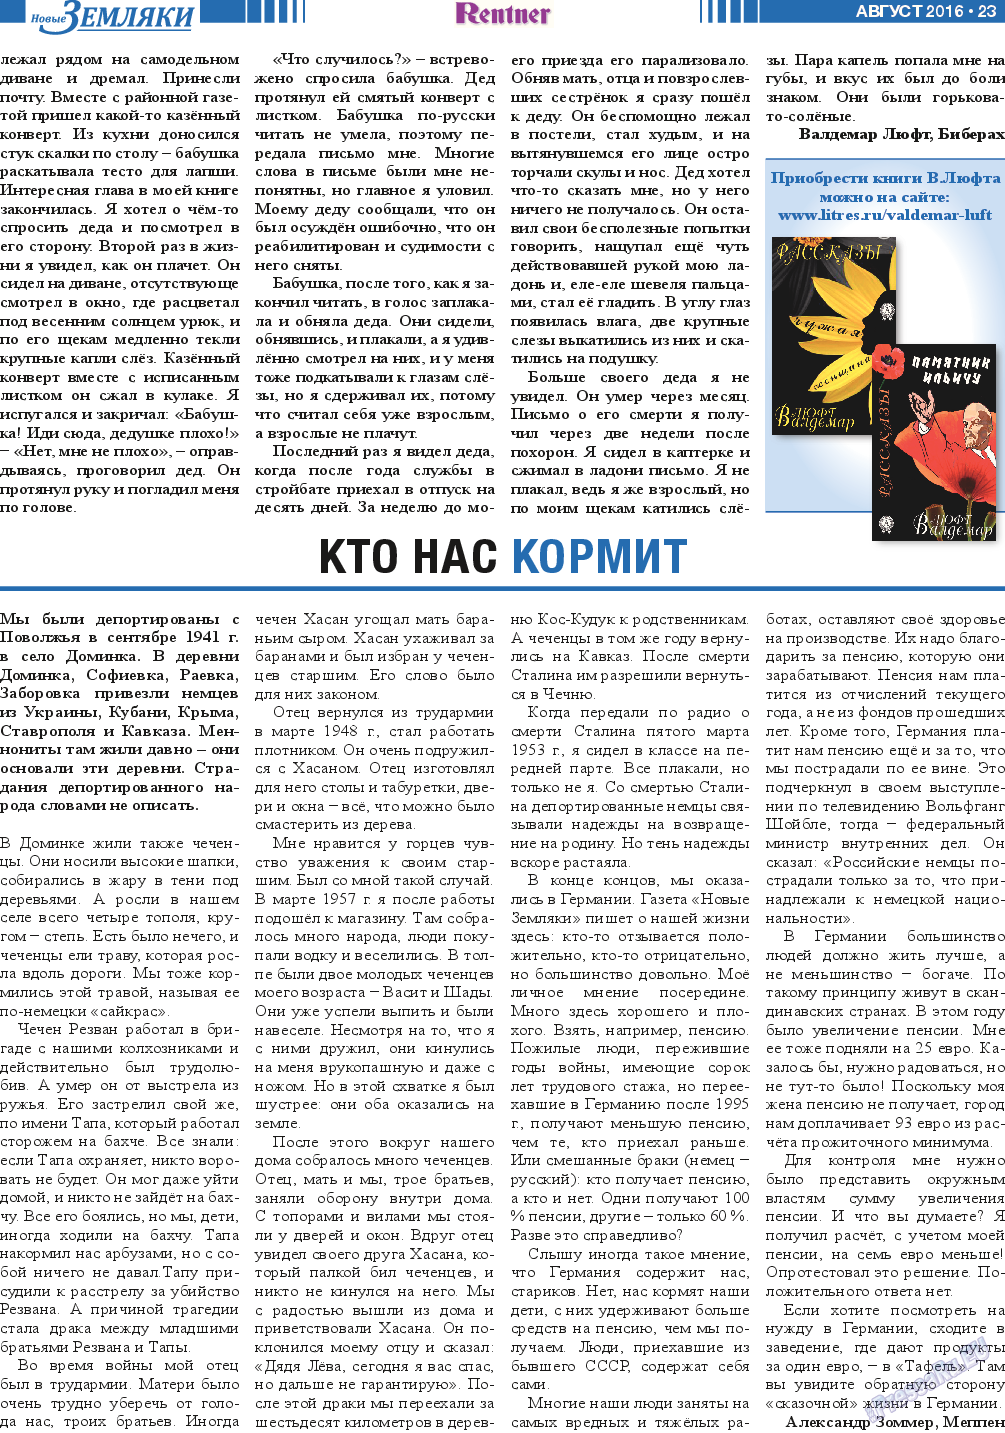 Новые Земляки (газета). 2016 год, номер 8, стр. 23